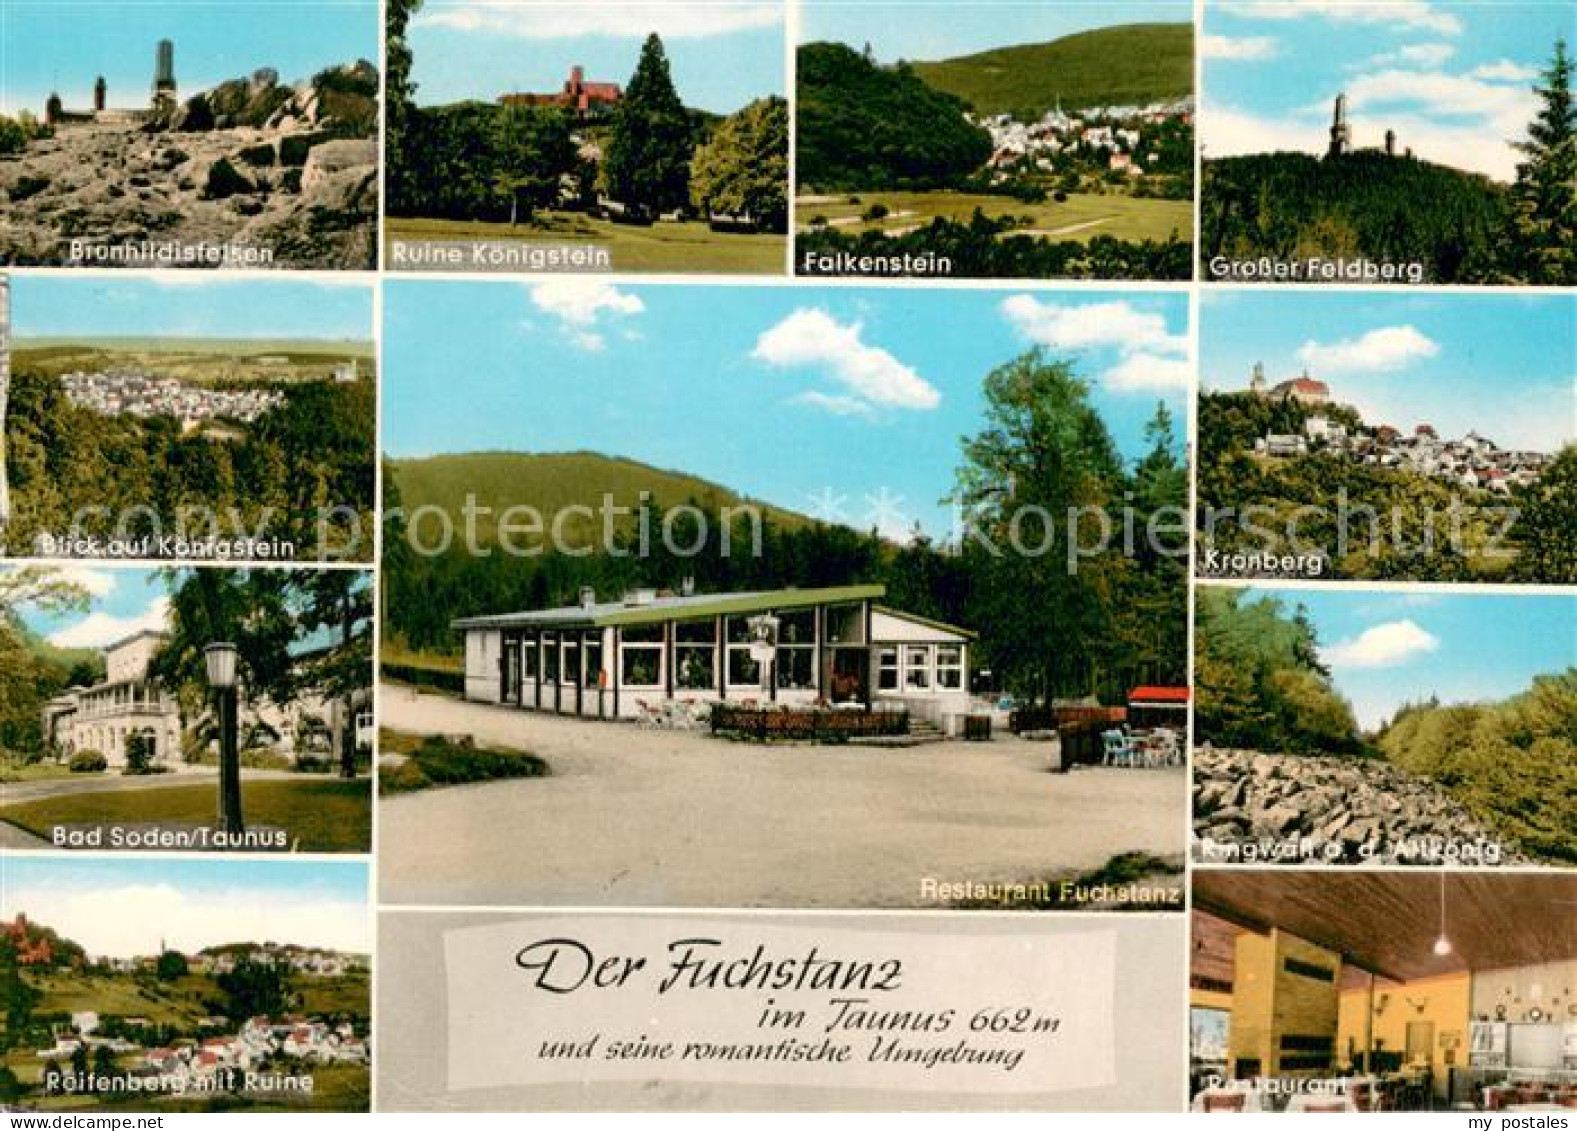 73655696 Taunus Region Brundhildisfelsen Ruine Koenigstein Falkenstein Gr Feldbe - To Identify